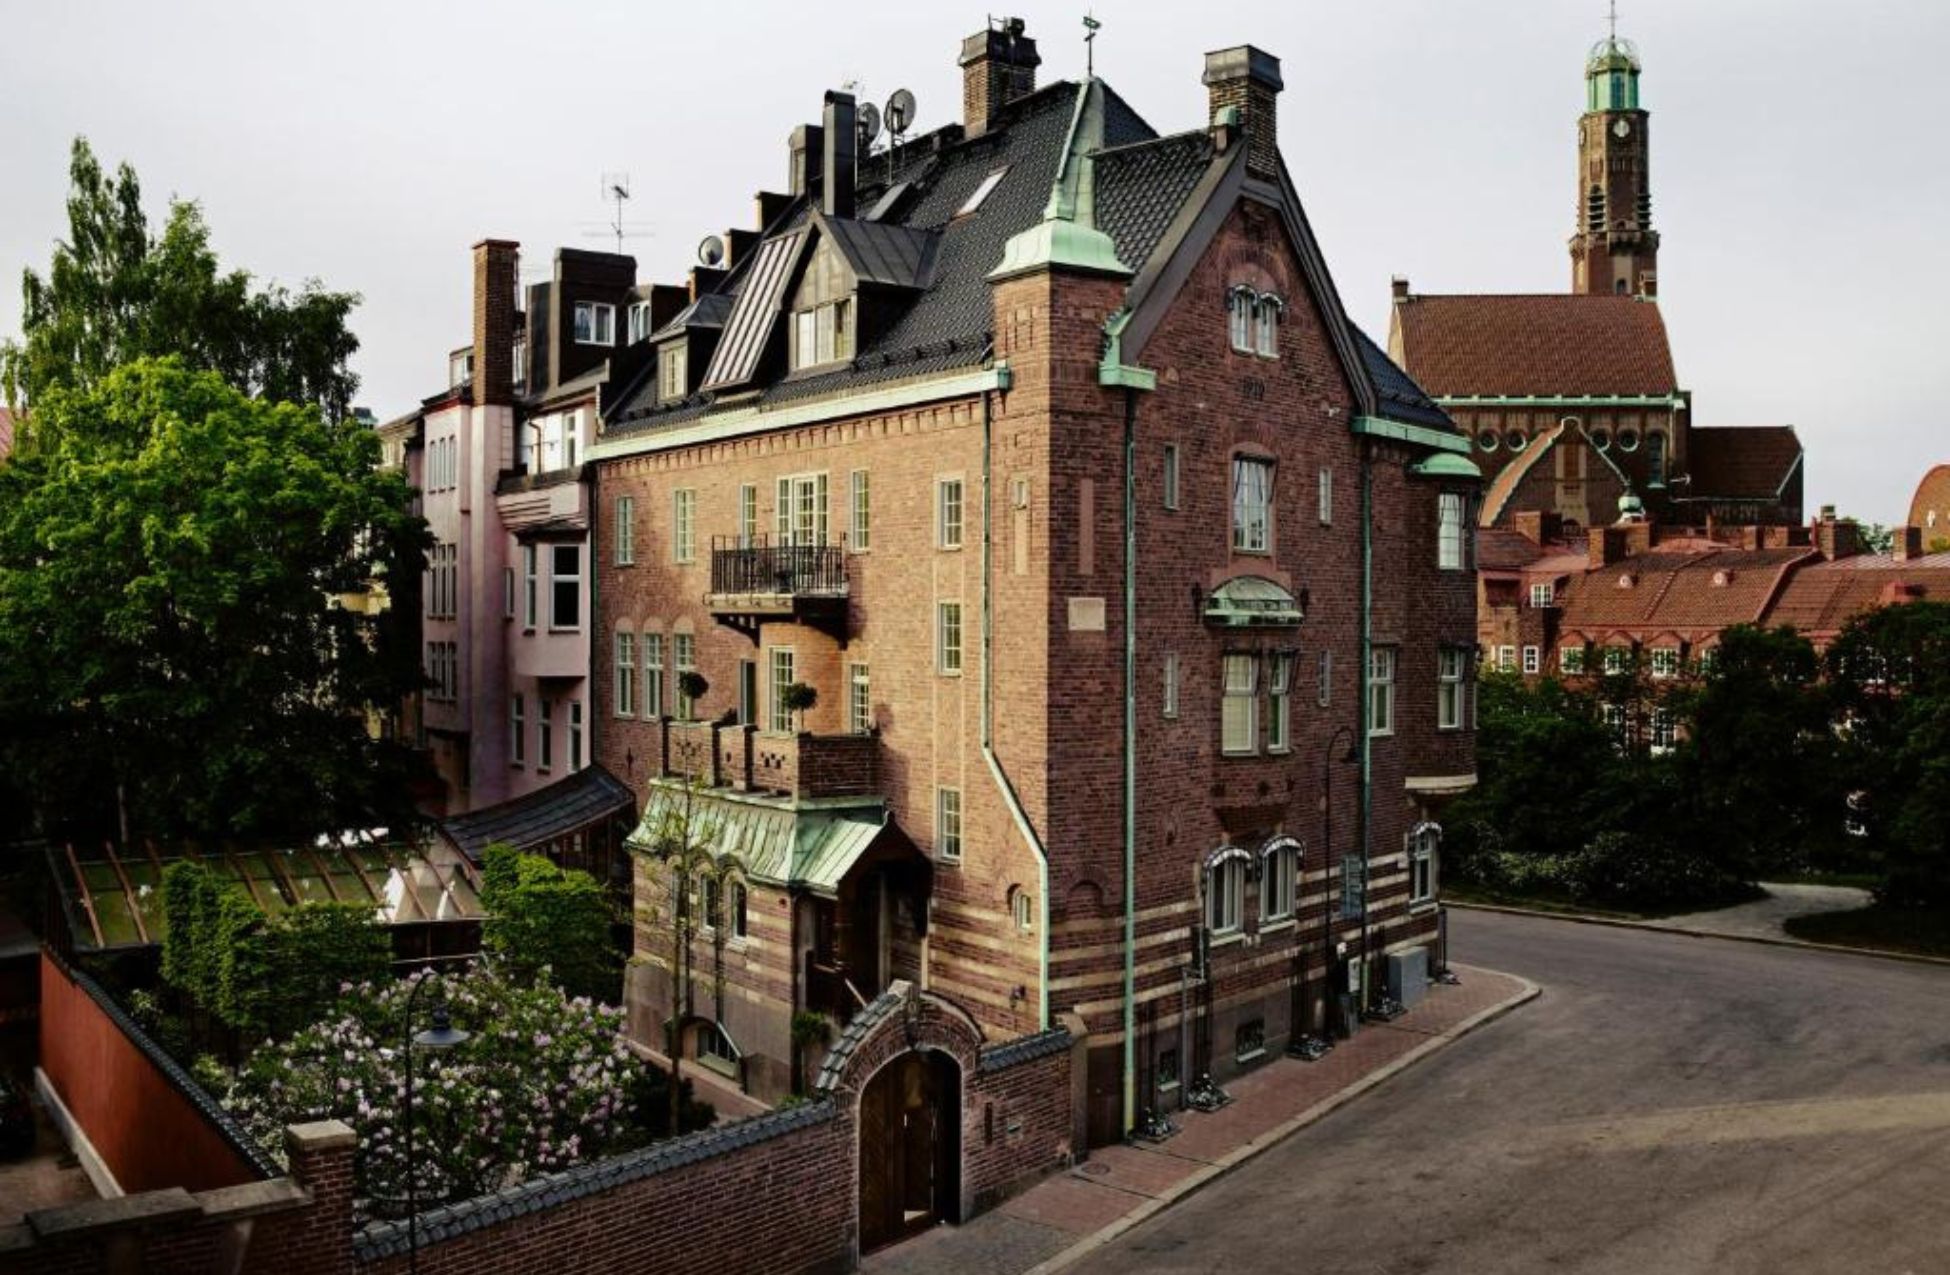 Ett Hem - Best Hotels In Stockholm